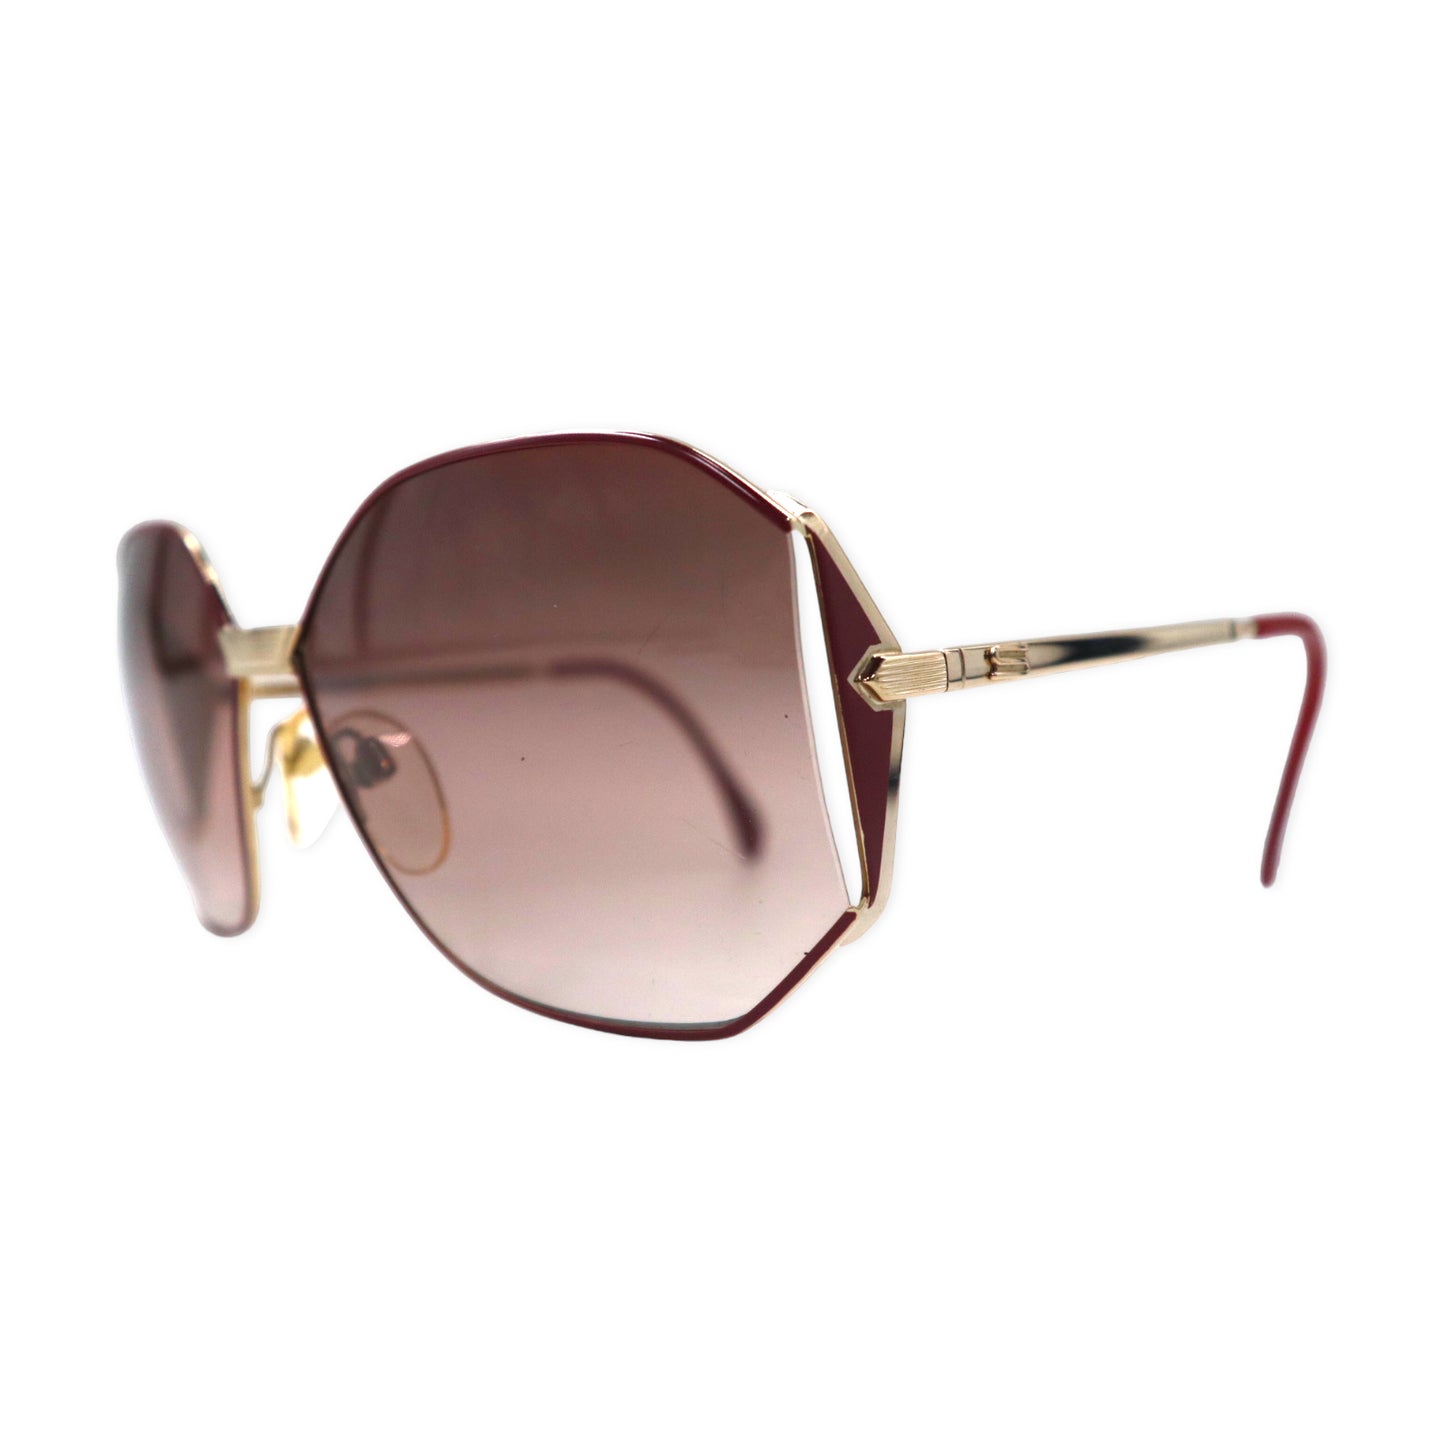 Vintage Octagon Sunglasses サングラス オクタゴン グラデーションレンズ ゴールド メタルフレーム ヴィンテージ